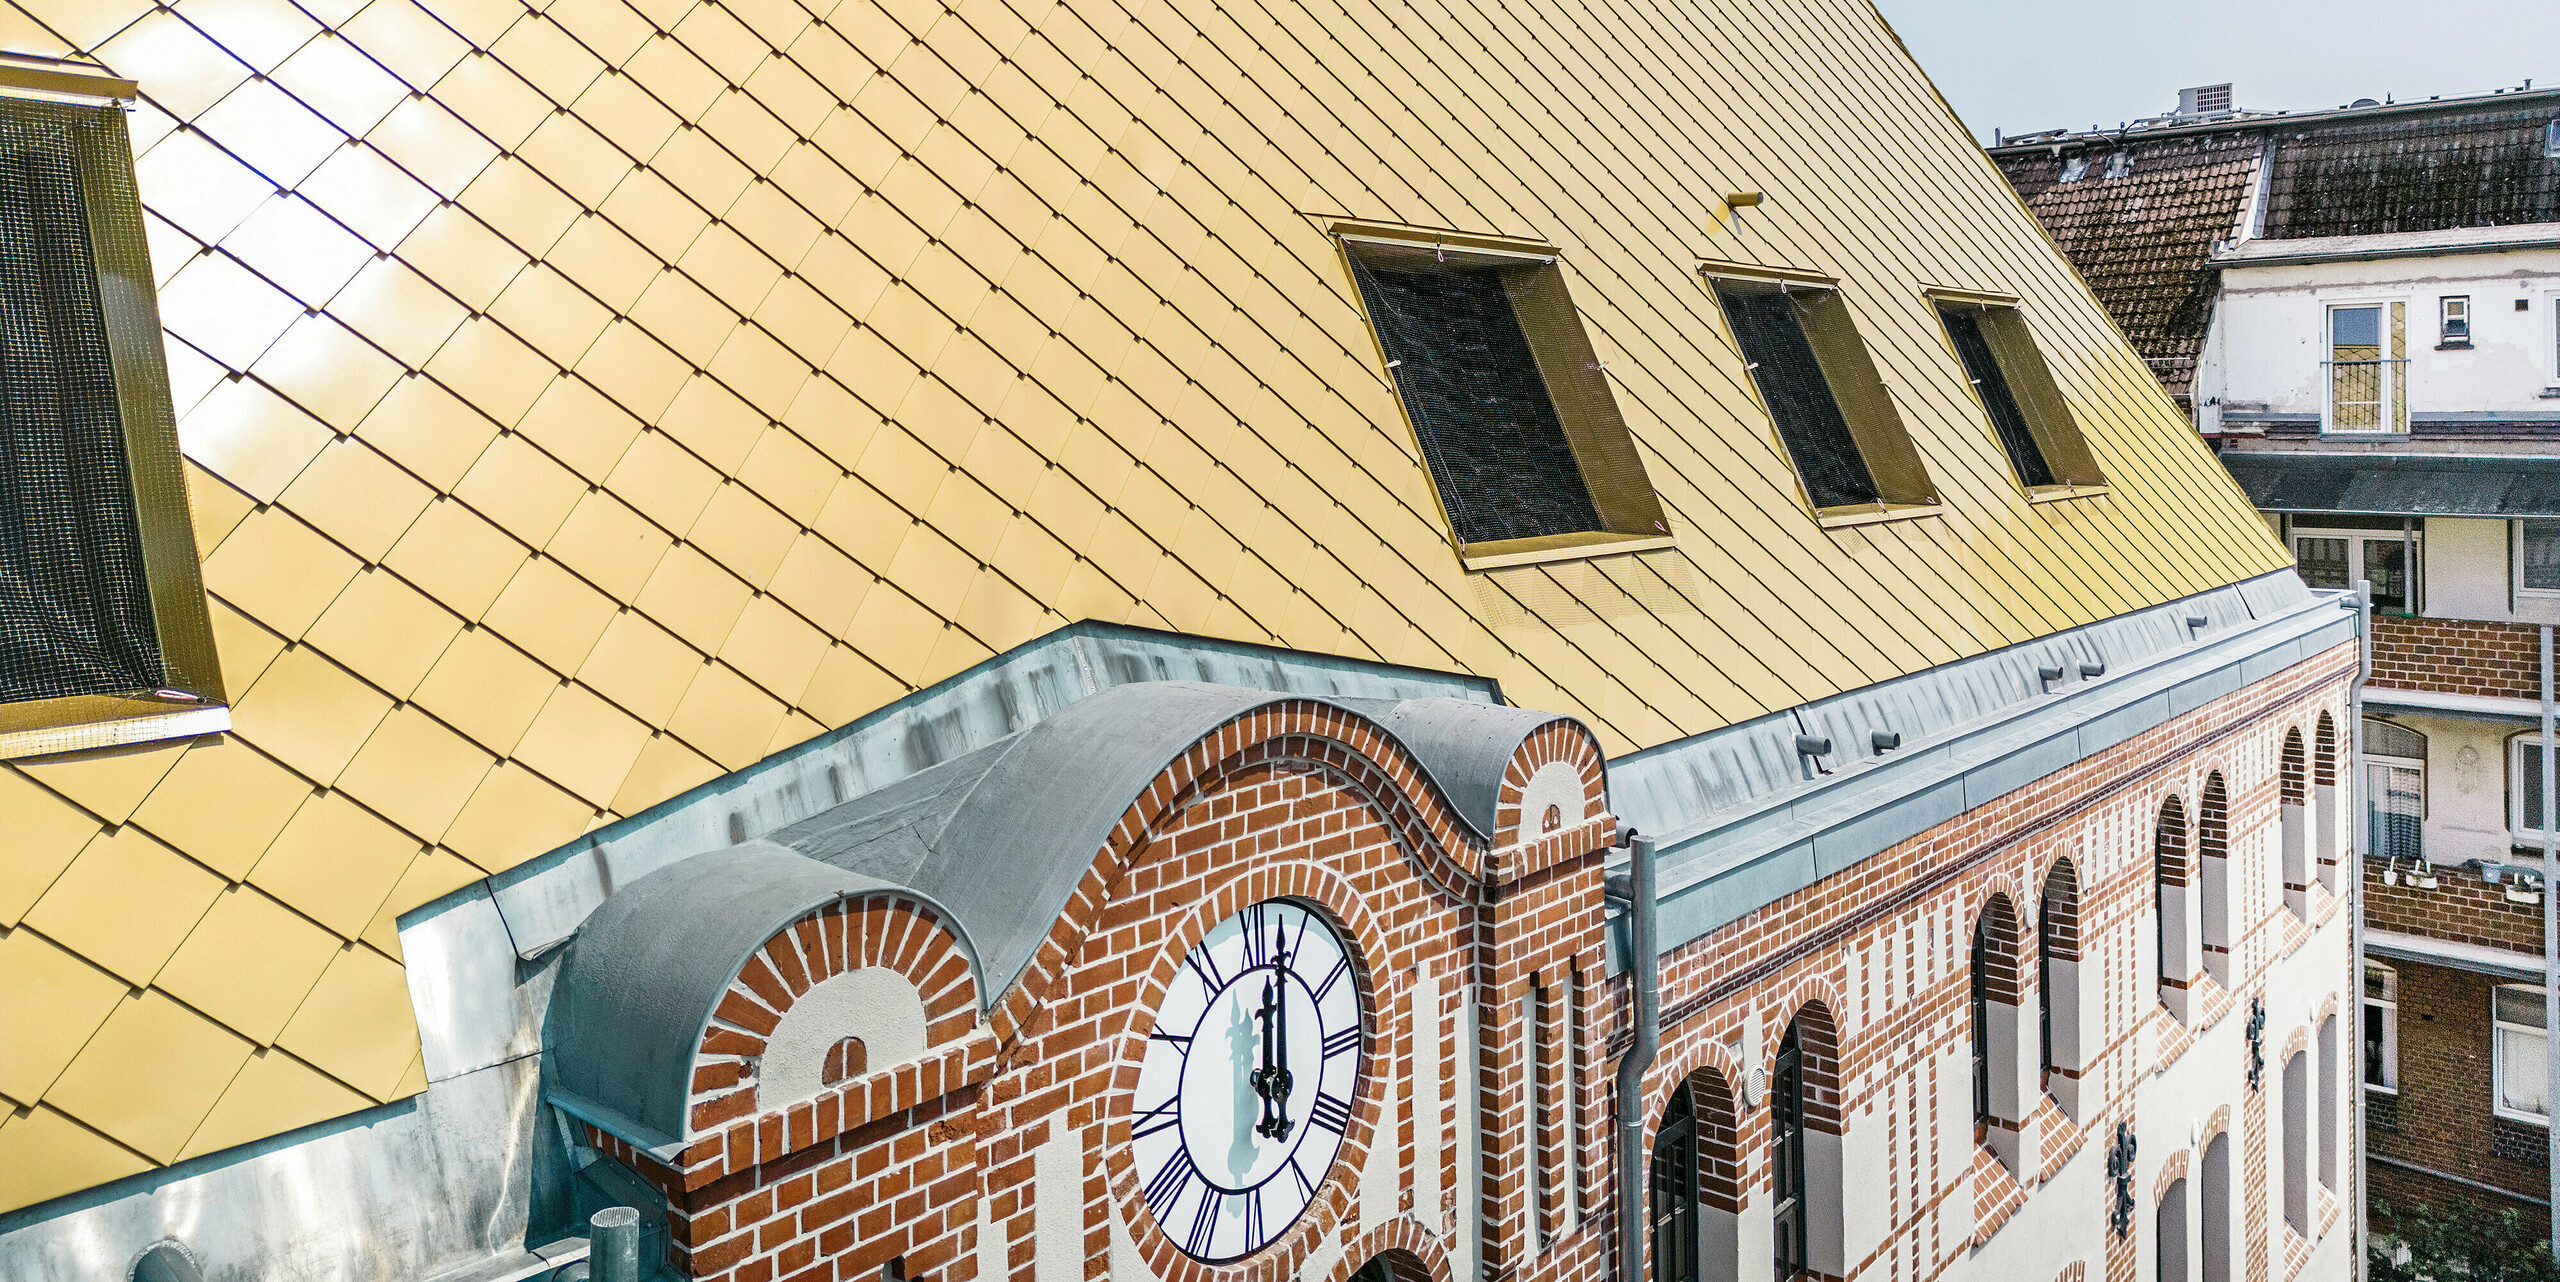 Nahaufnahme der speziellen Dachlandschaft des Studentenwohnheims "The Station" in Kiel. Das Gebäude wurde mit PREFA Dach- und Wandrauten 29 × 29 in der Farbe Mayagold verkleidet.